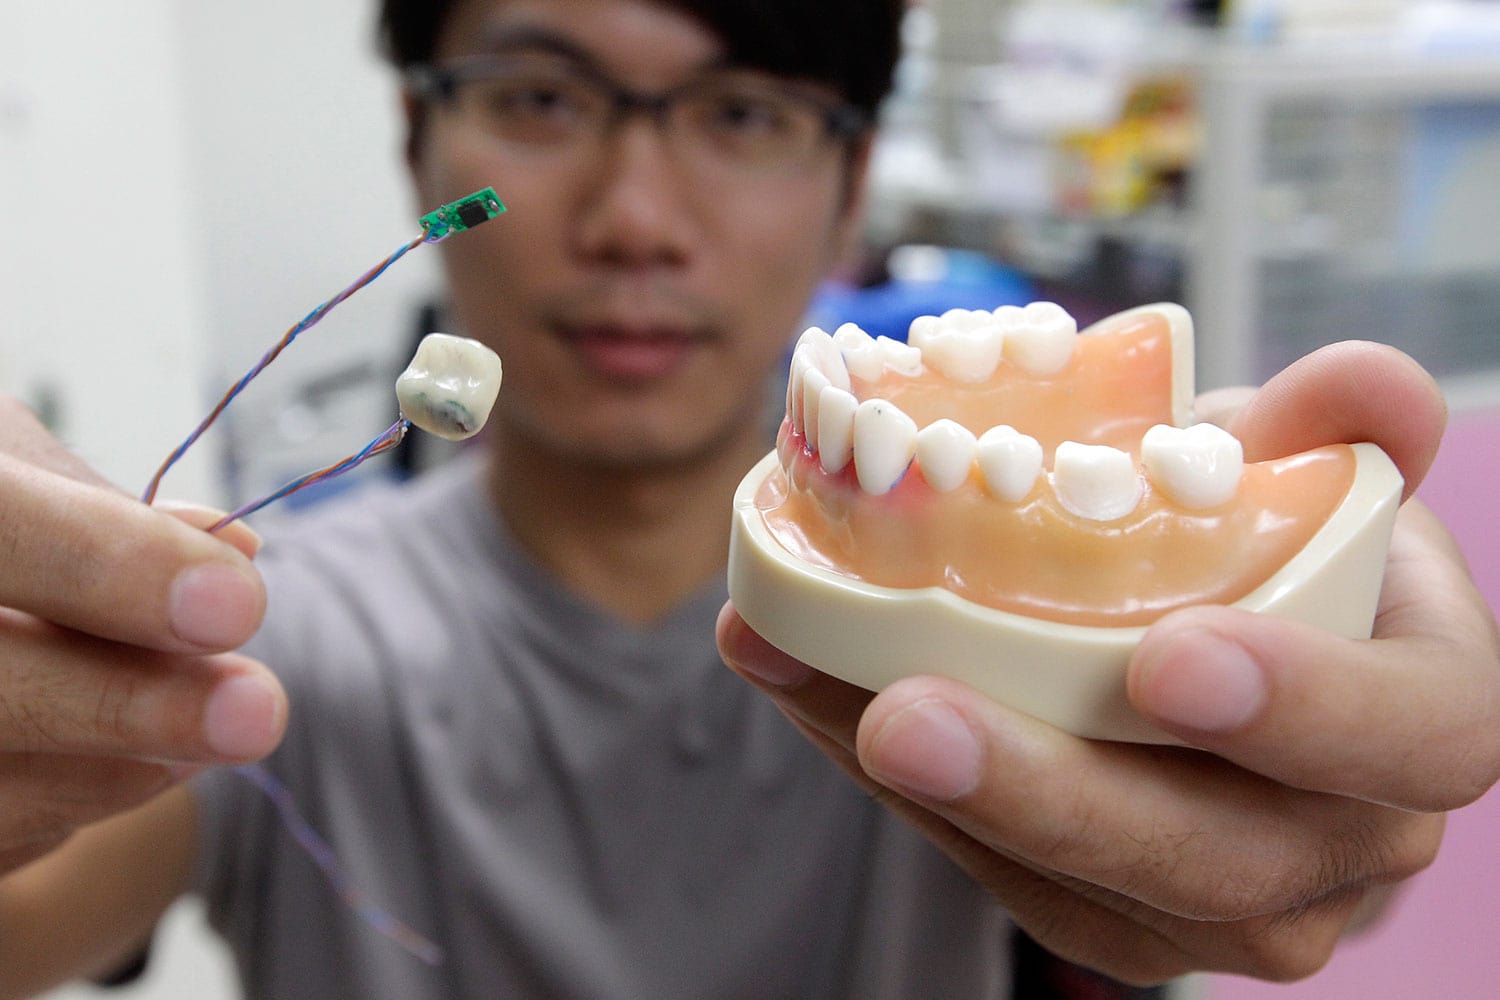 "Smart Tooth" es un sensor dental que registra la actividad oral para emitir diagnósticos